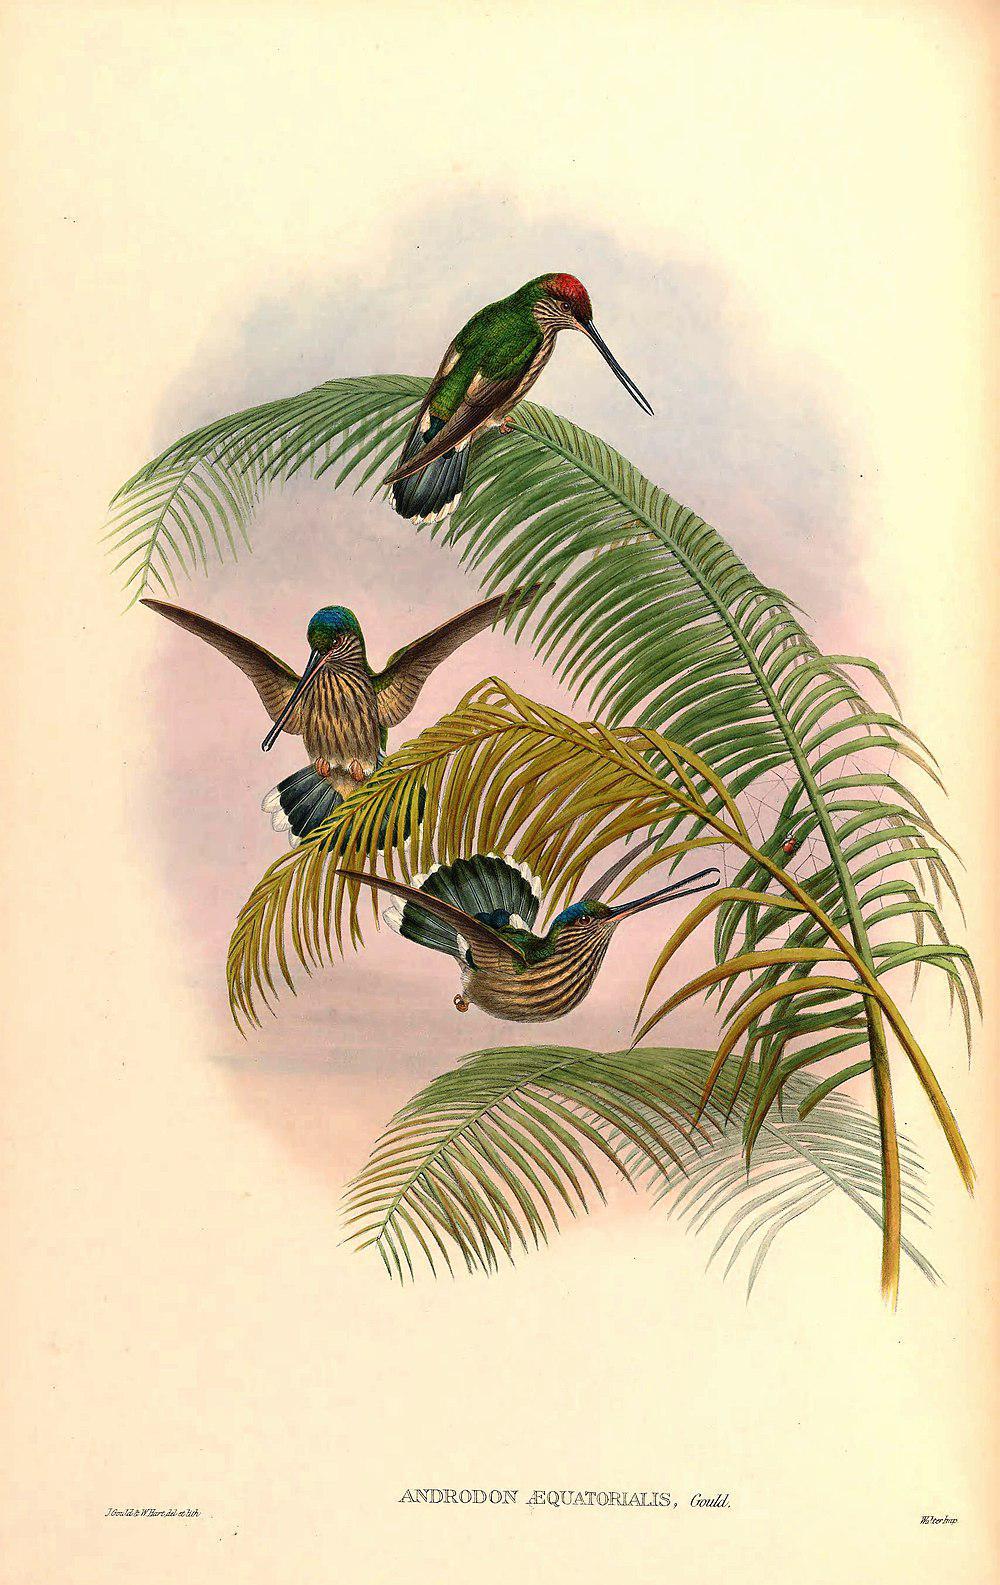 齿嘴蜂鸟 / Tooth-billed Hummingbird / Androdon aequatorialis